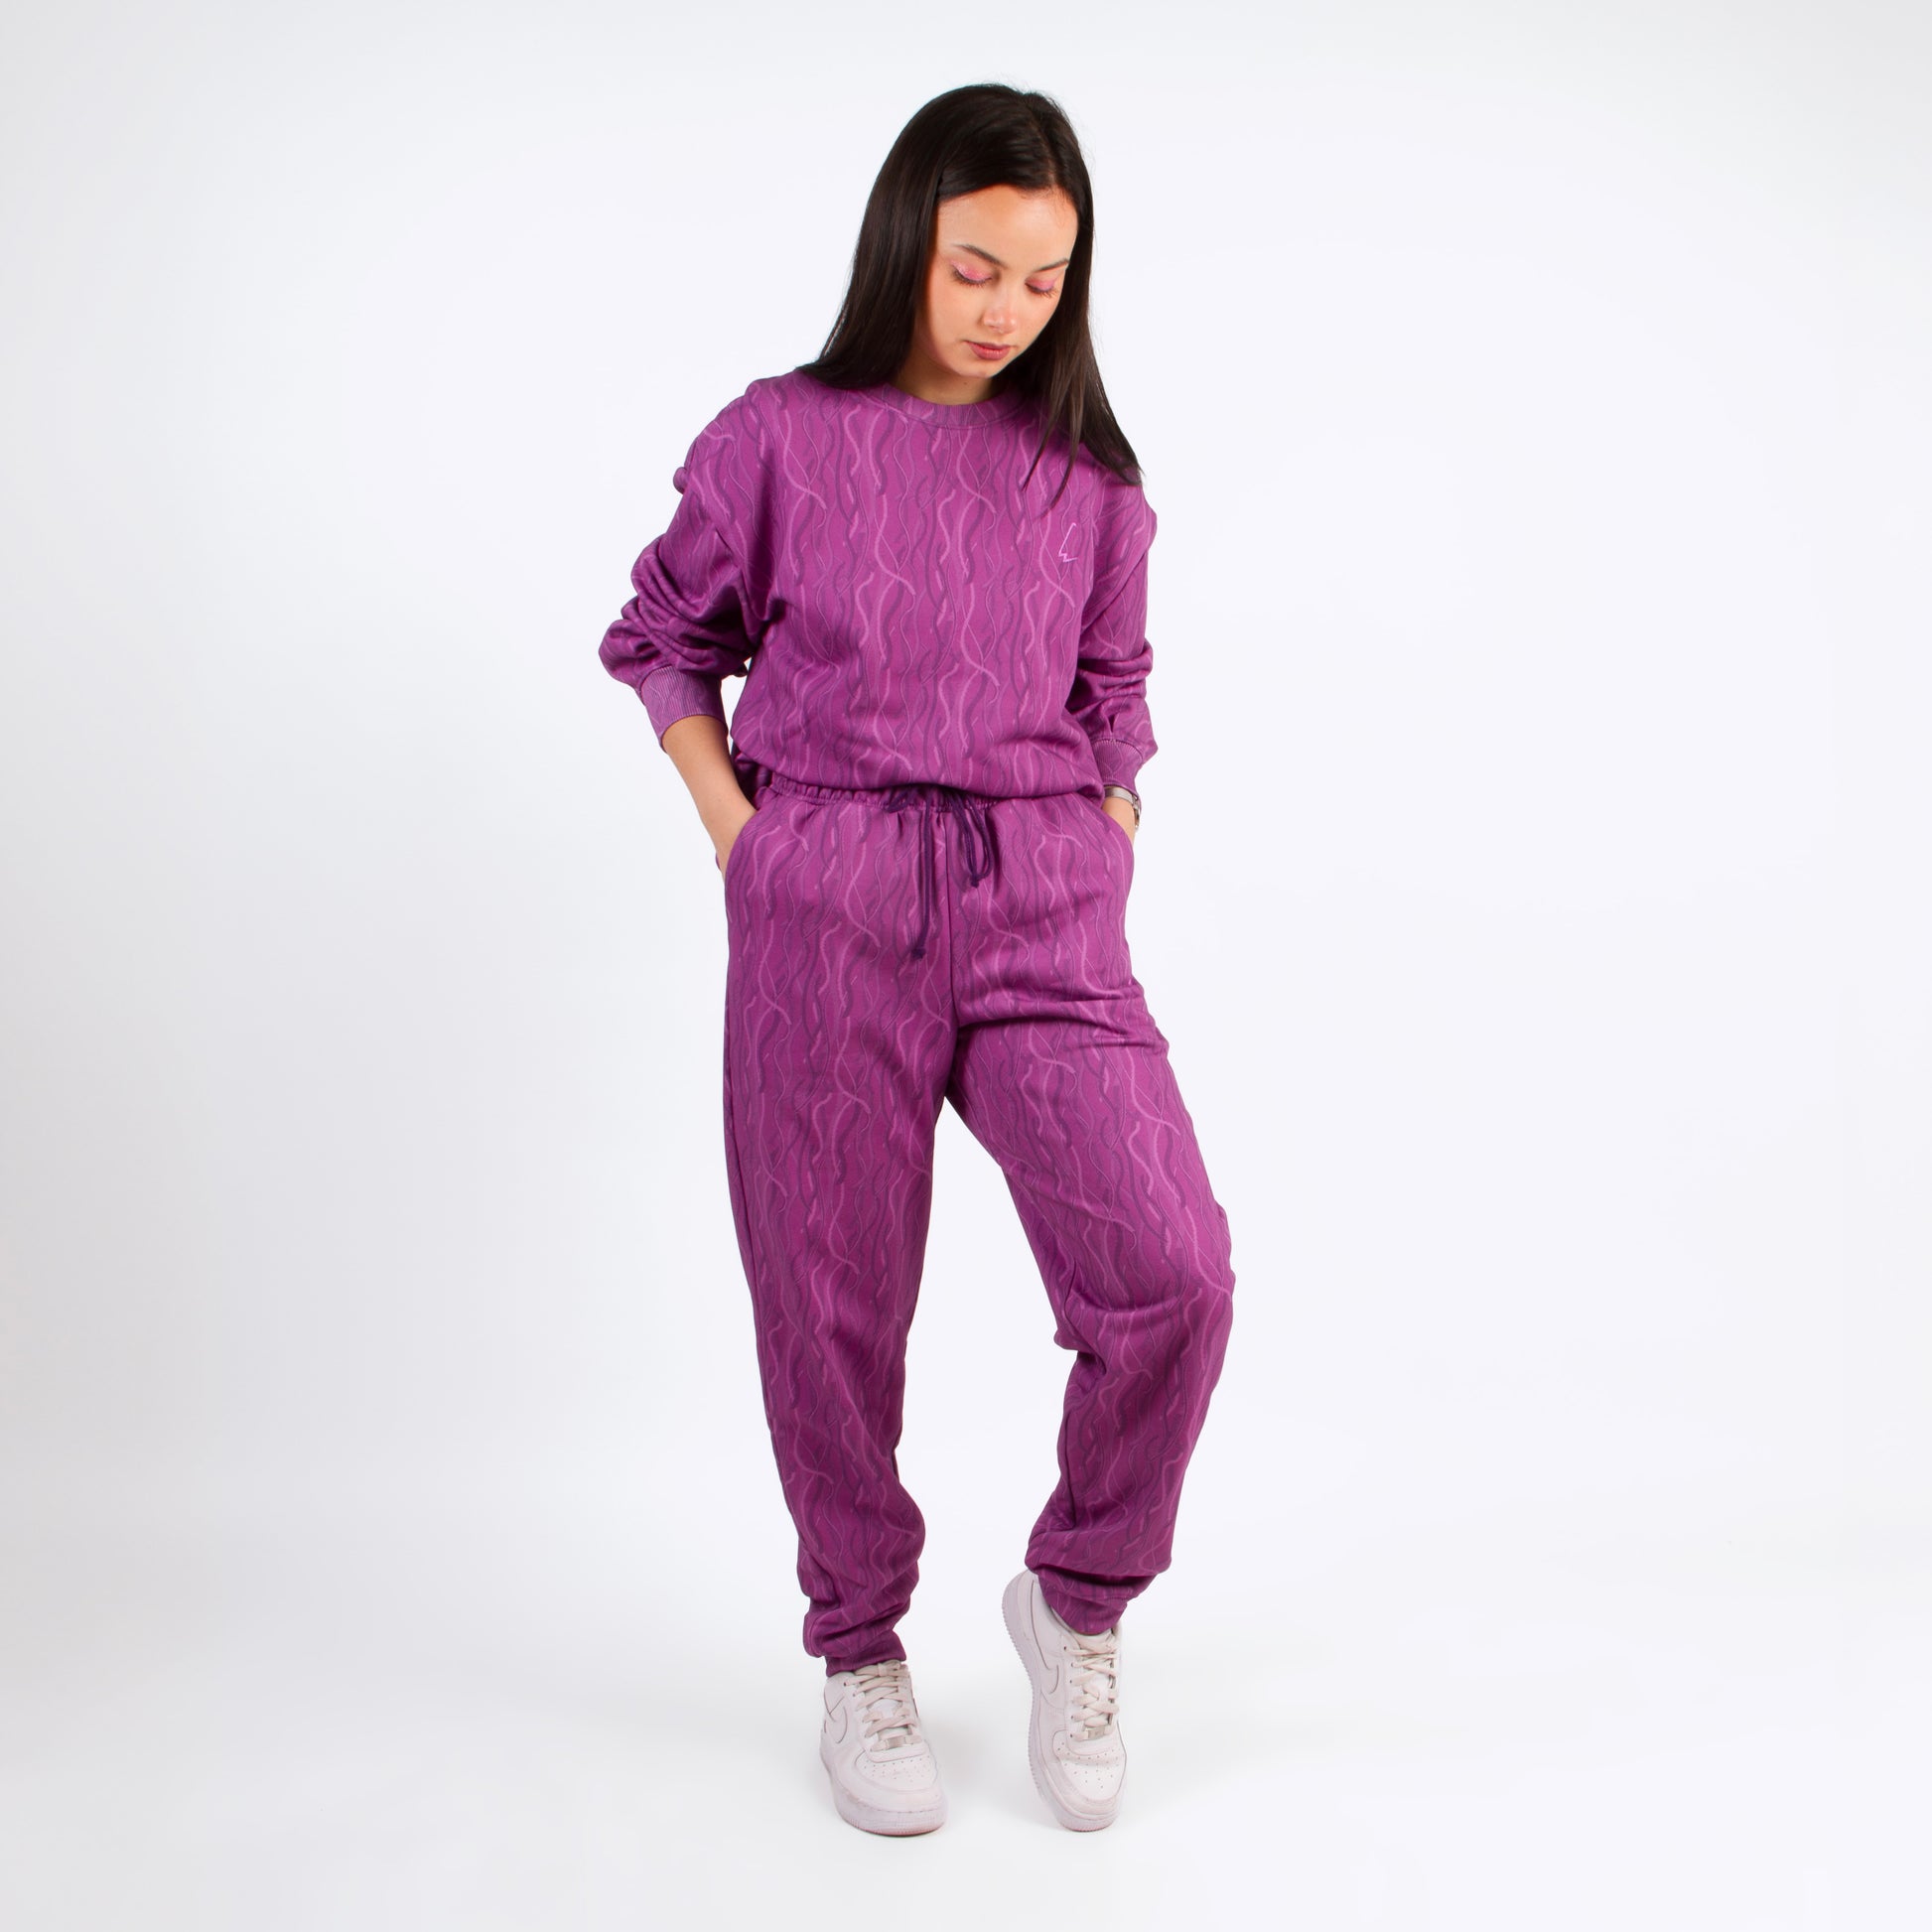 lucewear : femme portant un ensemble de survêtement violet